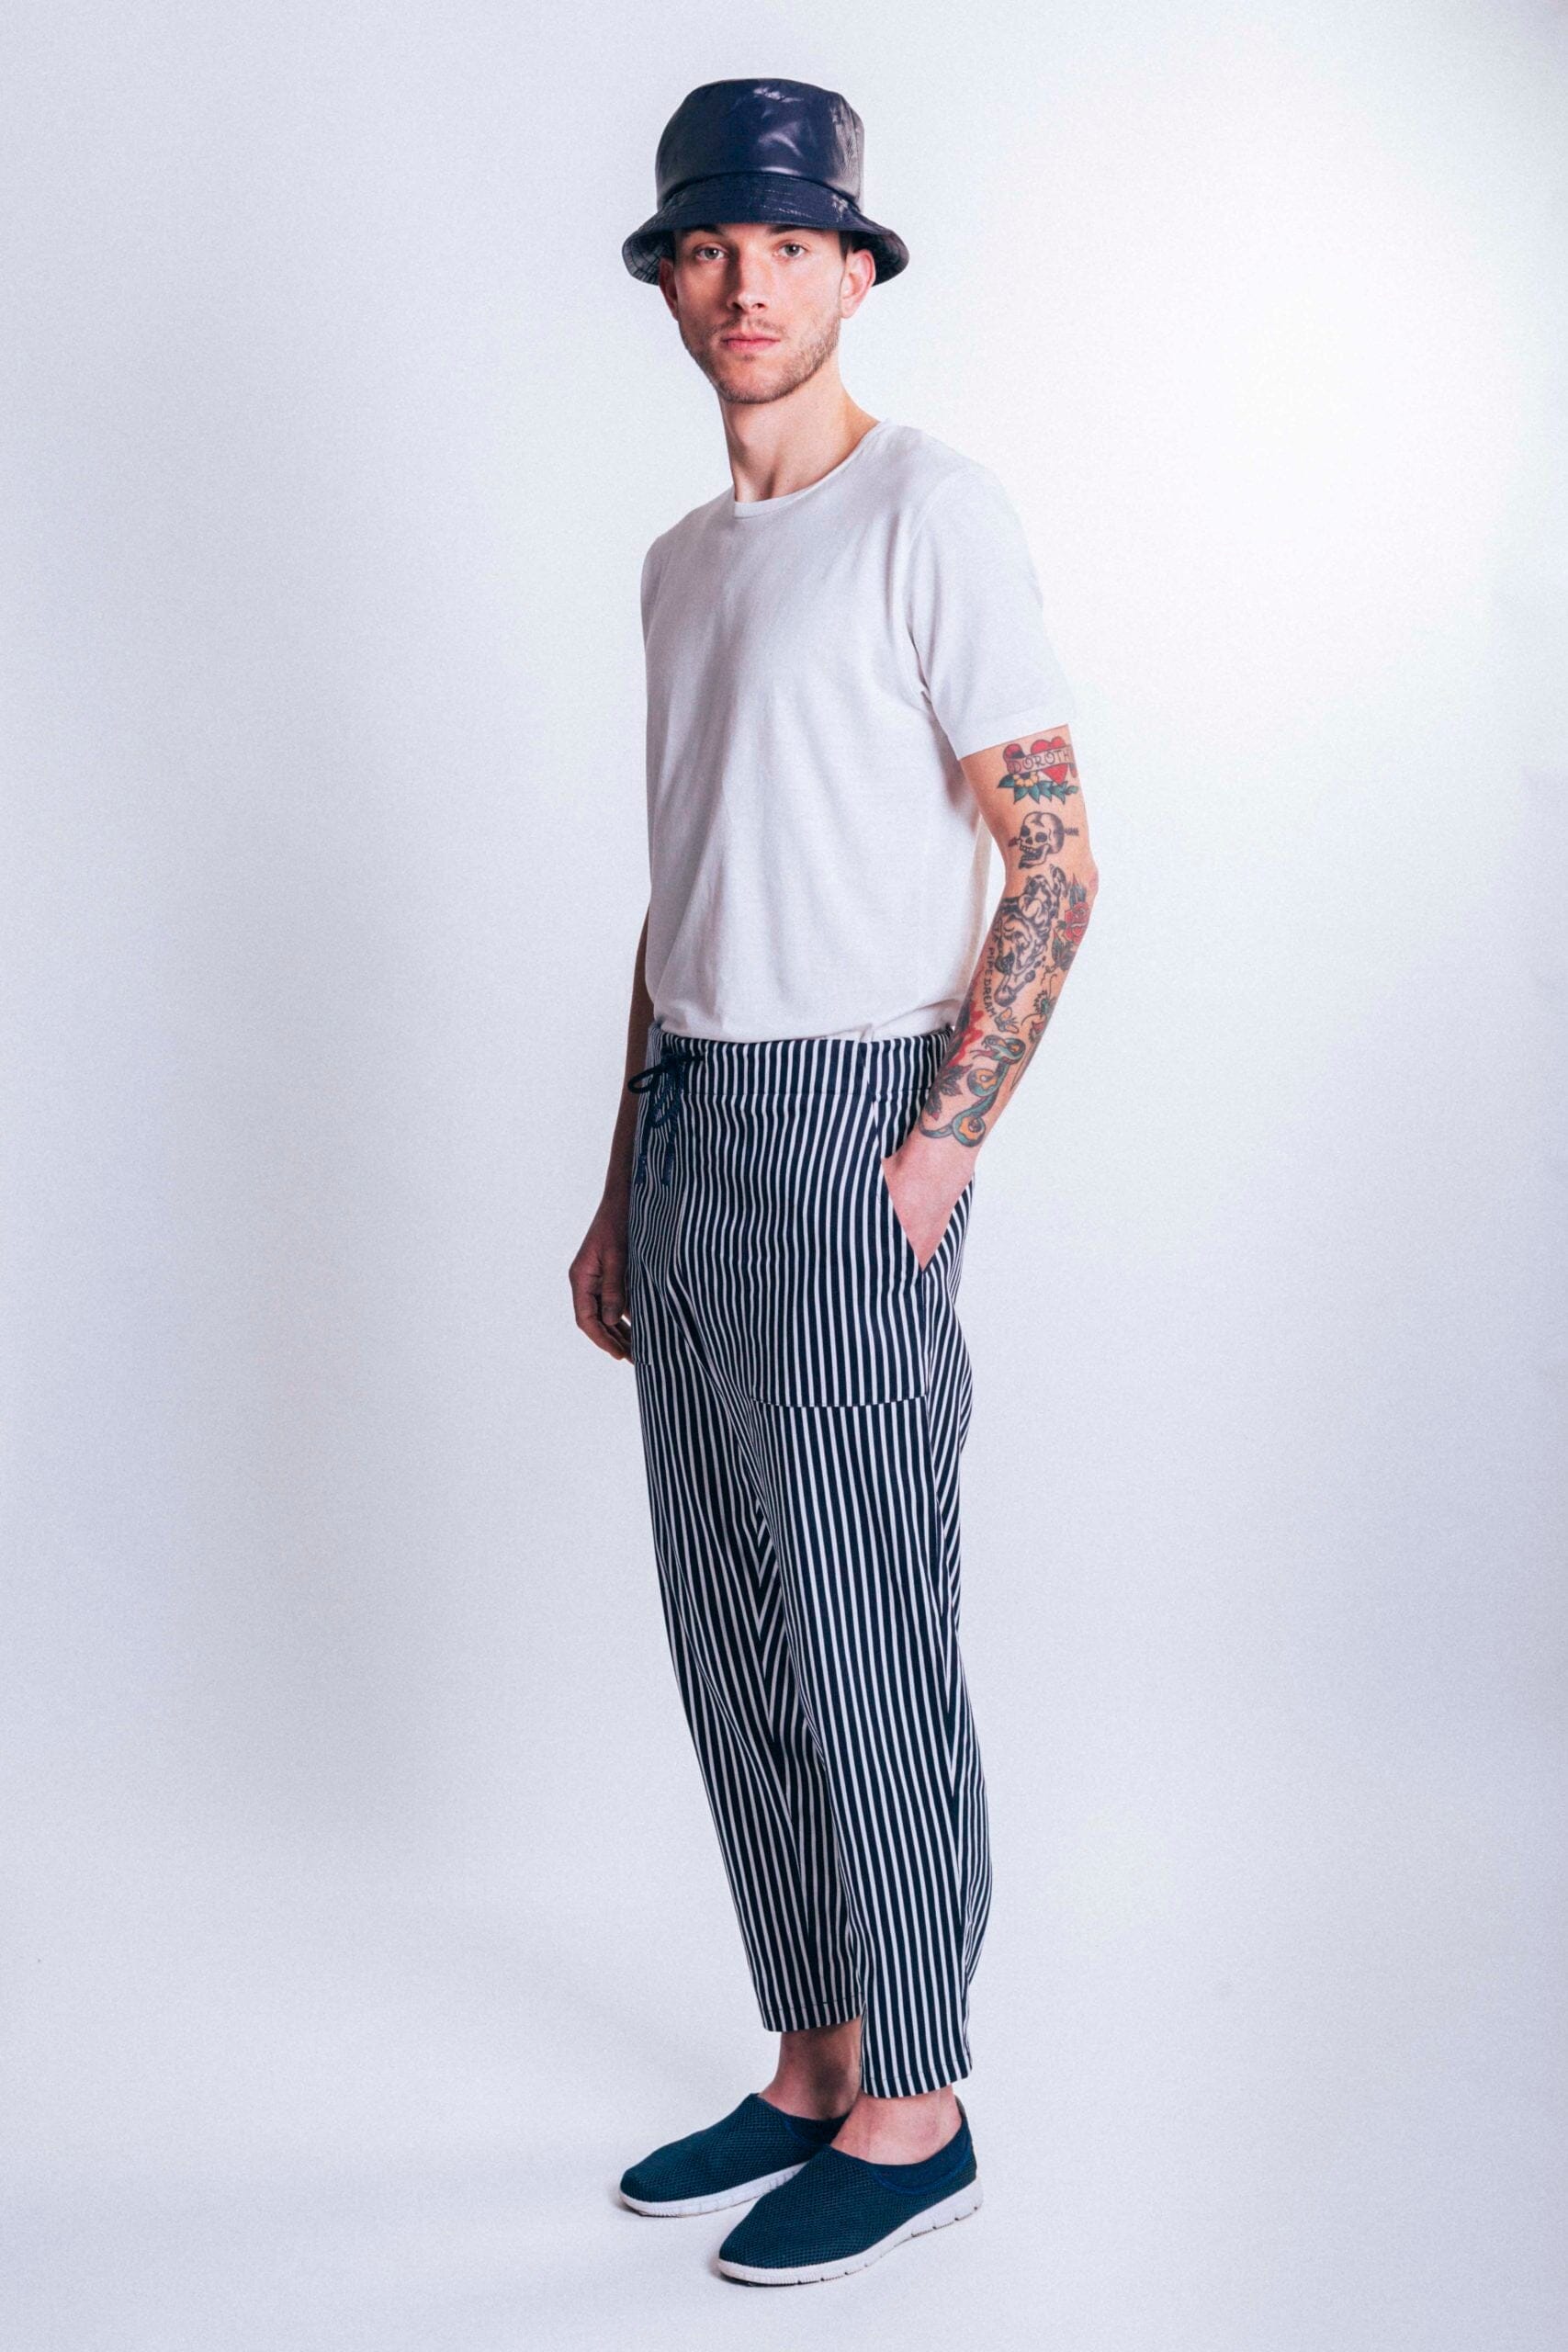 Free - Striped Pants LaurenceAirline 